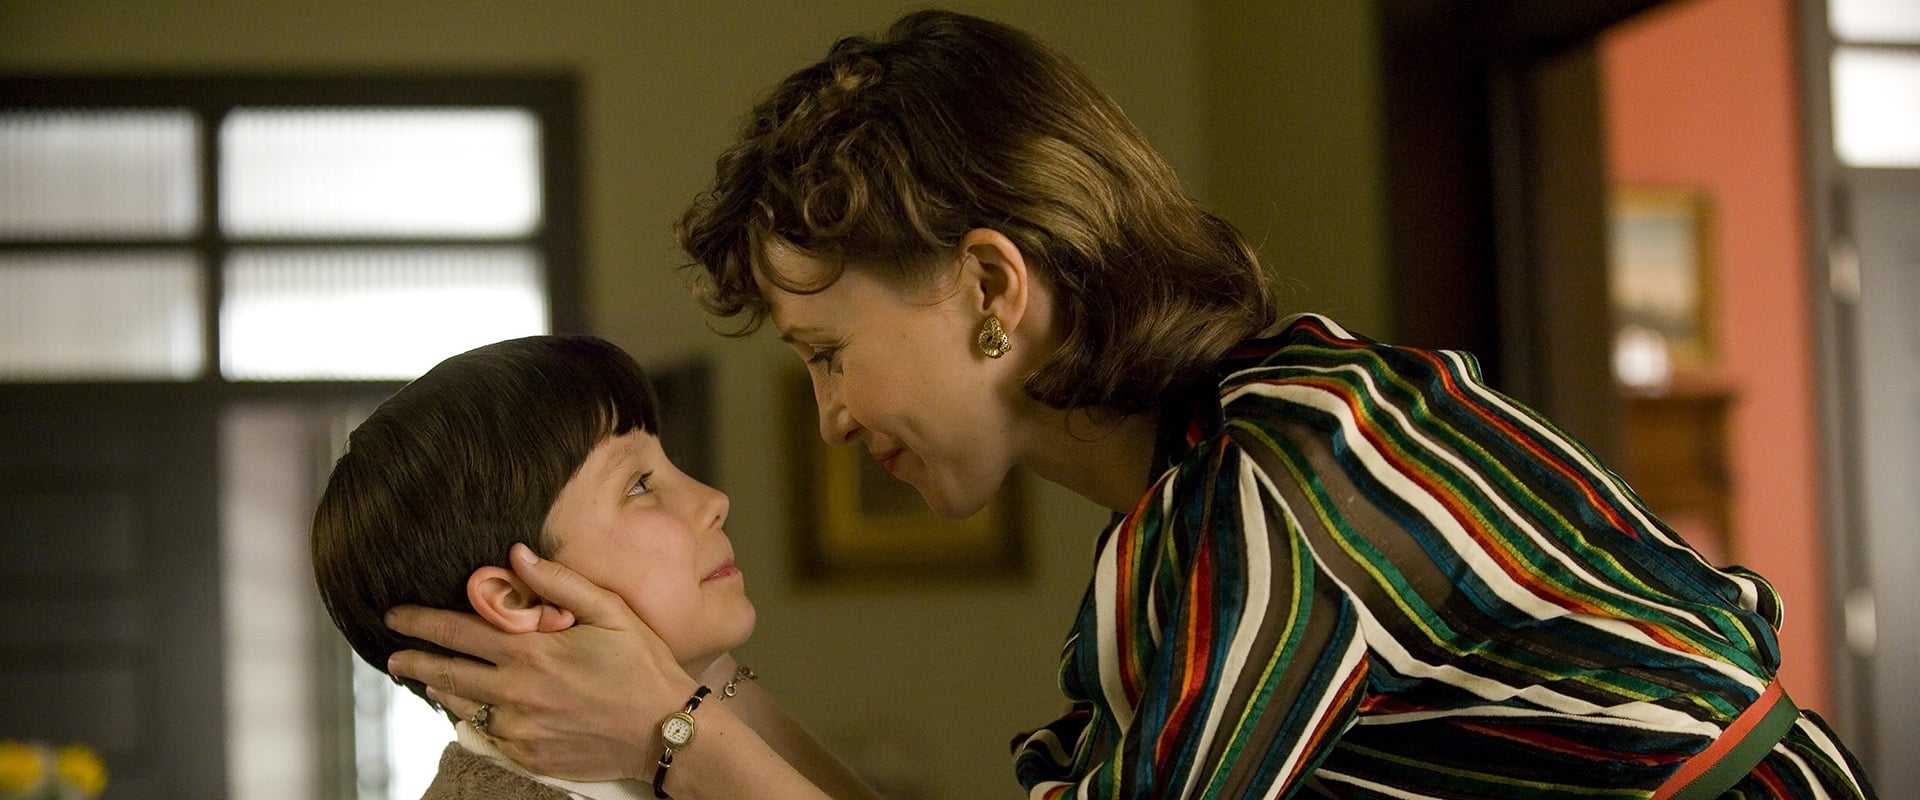 bleek keten Verpersoonlijking The Boy in the Striped Pyjamas (Film, 2008) - MovieMeter.nl